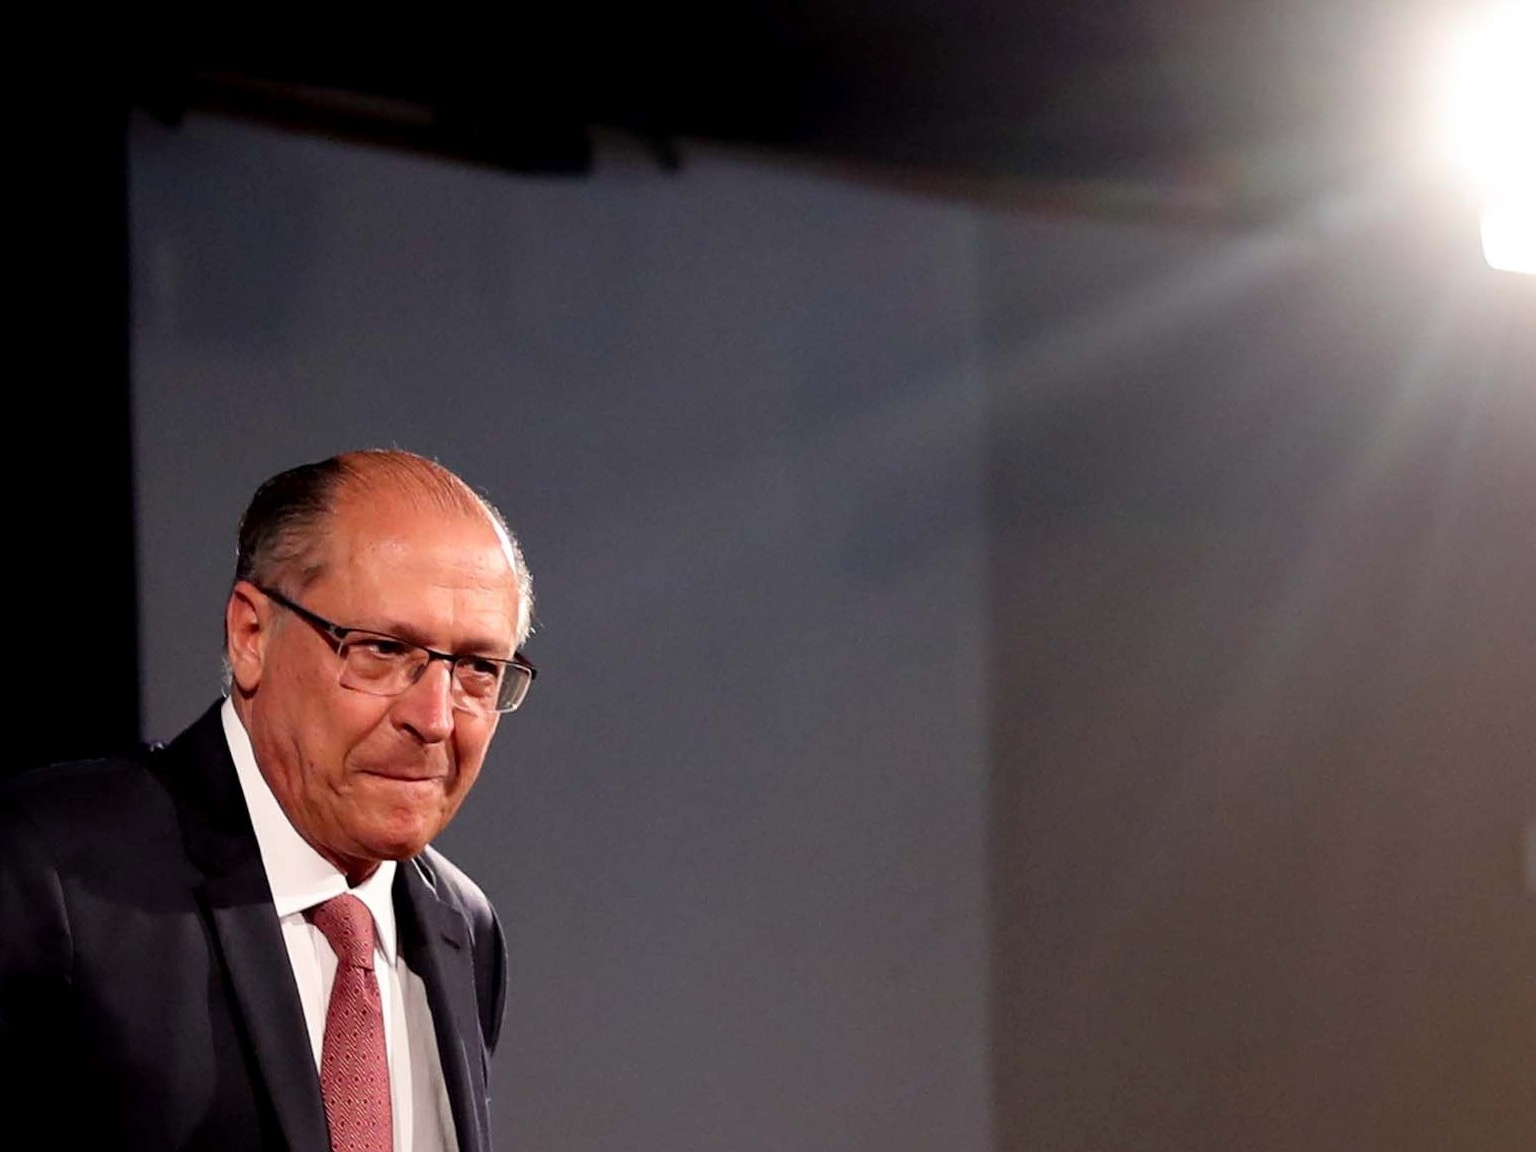 De saída do PSDB, Alckmin quer frente ampla em SP e foca no trabalhismo - 20/09/2021 - UOL Notícias